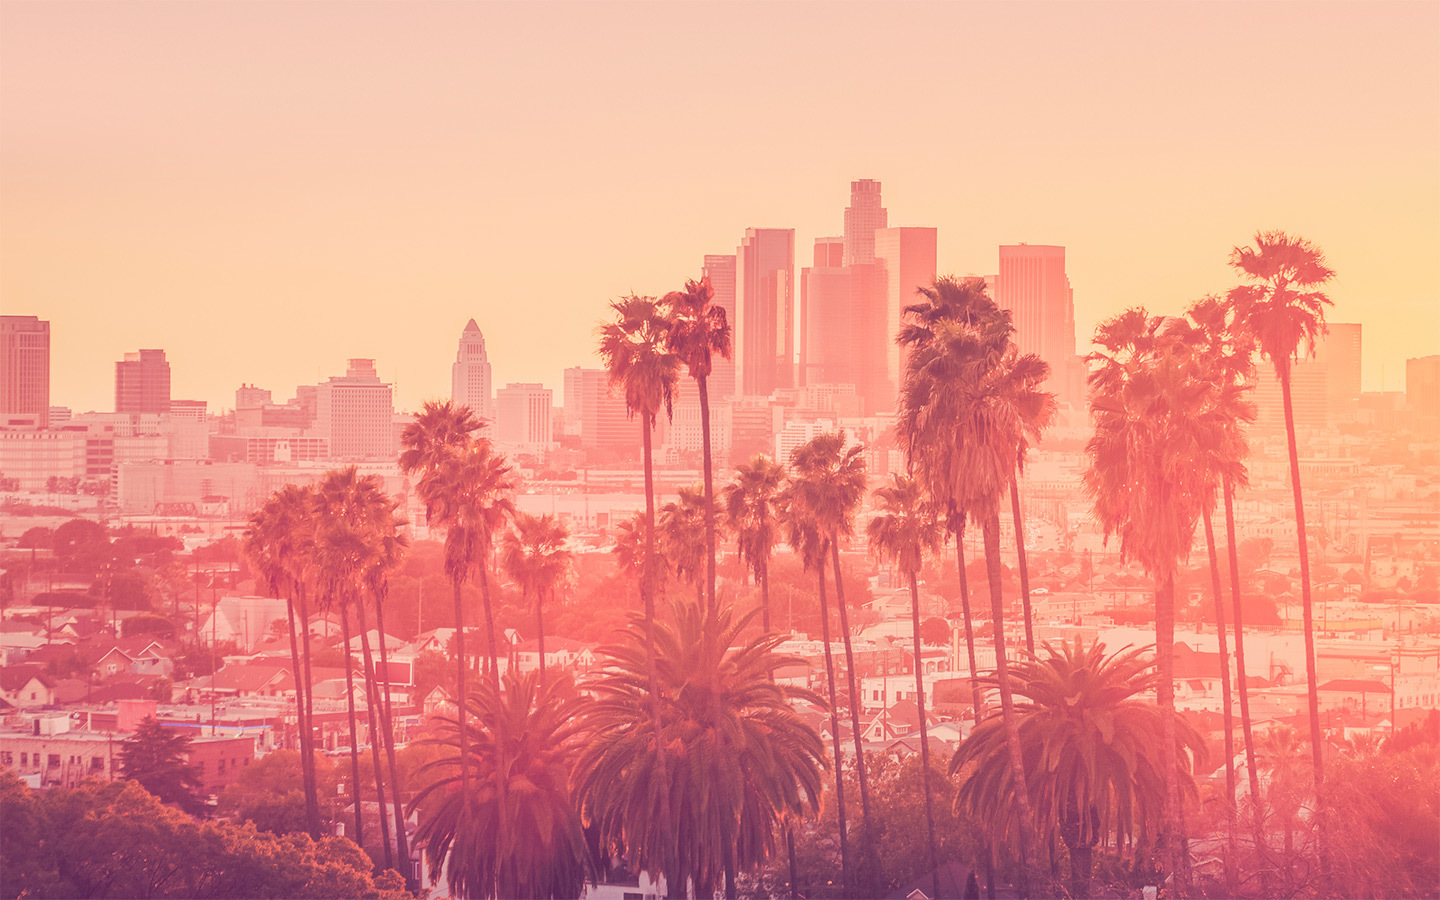 LA skyline, pinkish in color